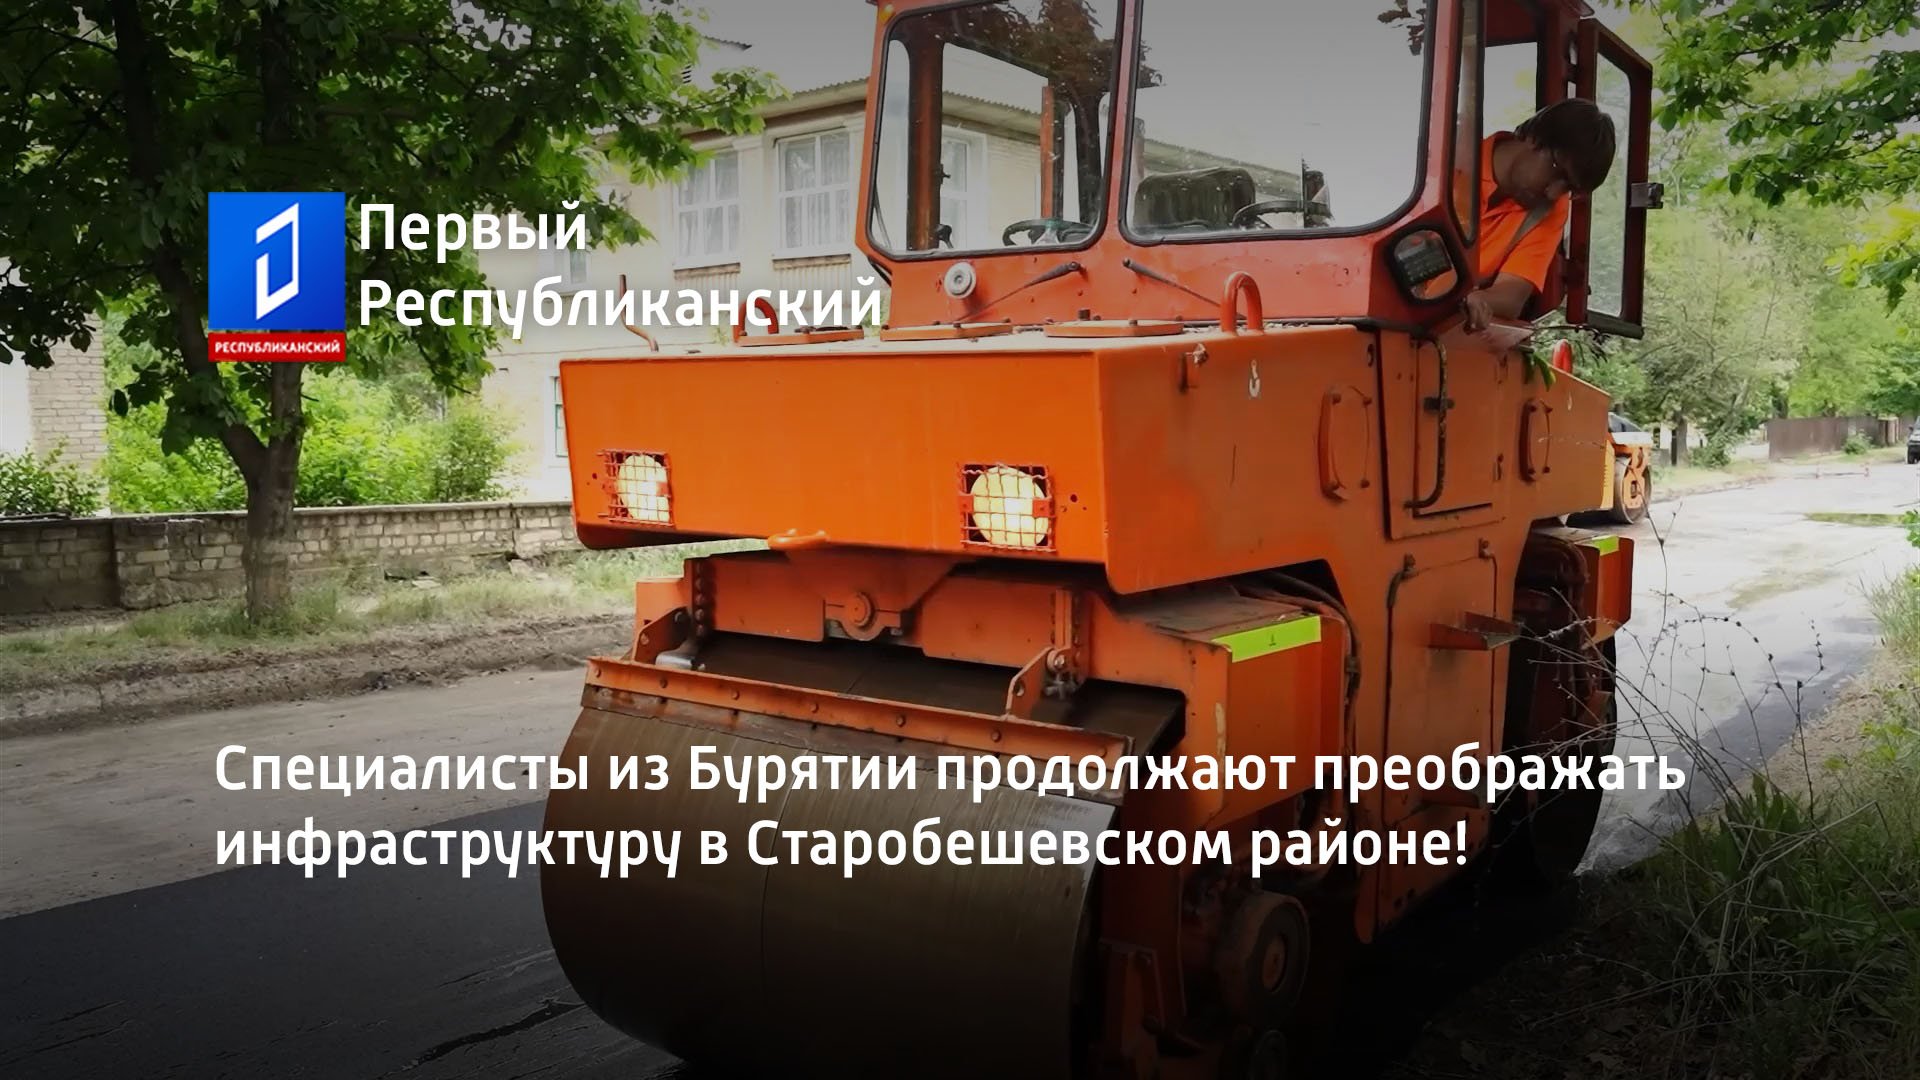 Специалисты из Бурятии продолжают преображать инфраструктуру в Старобешевском районе!